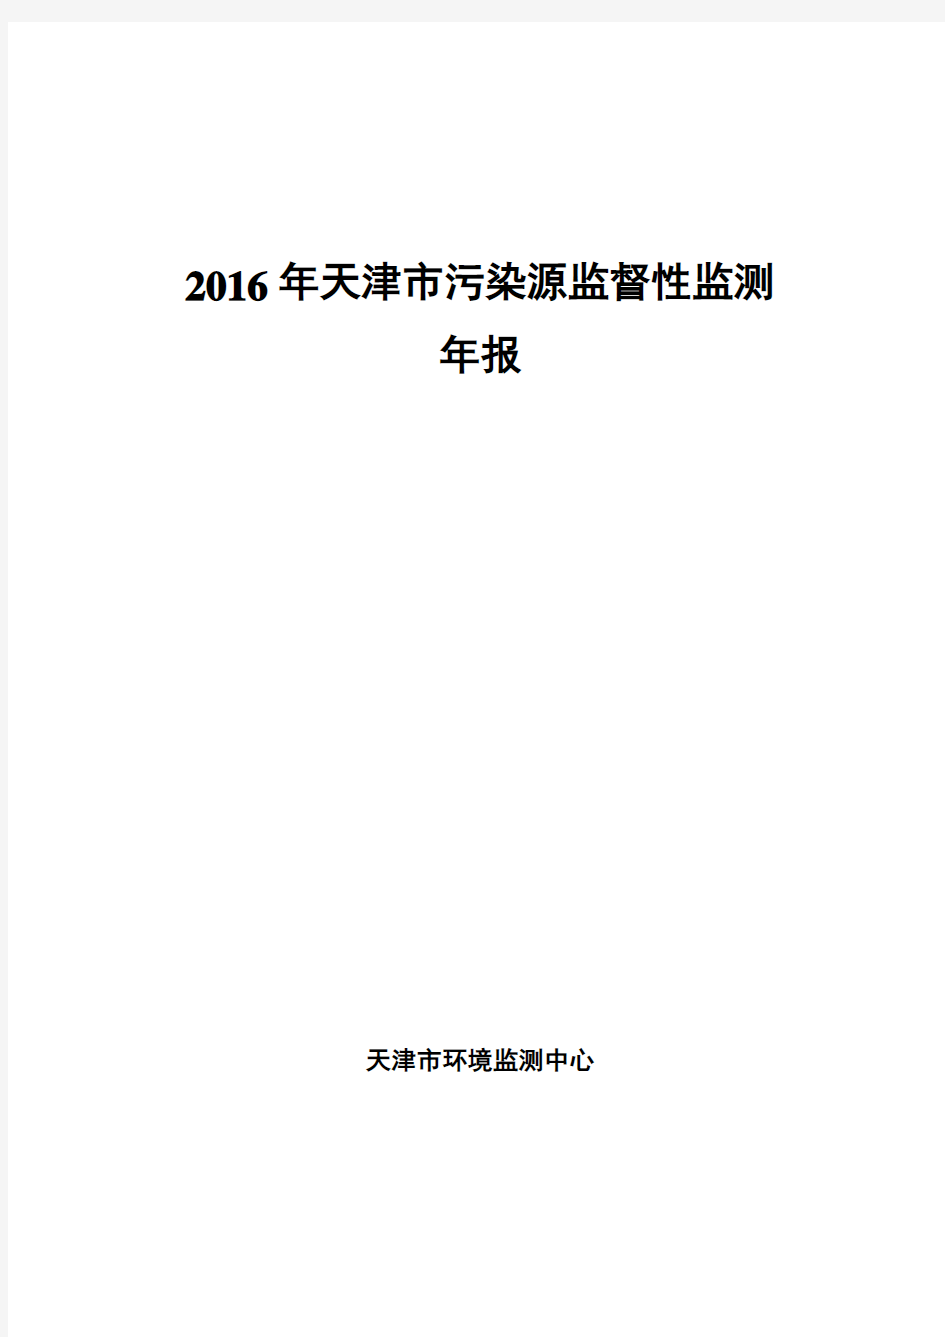 2016年天津污染源监督性监测